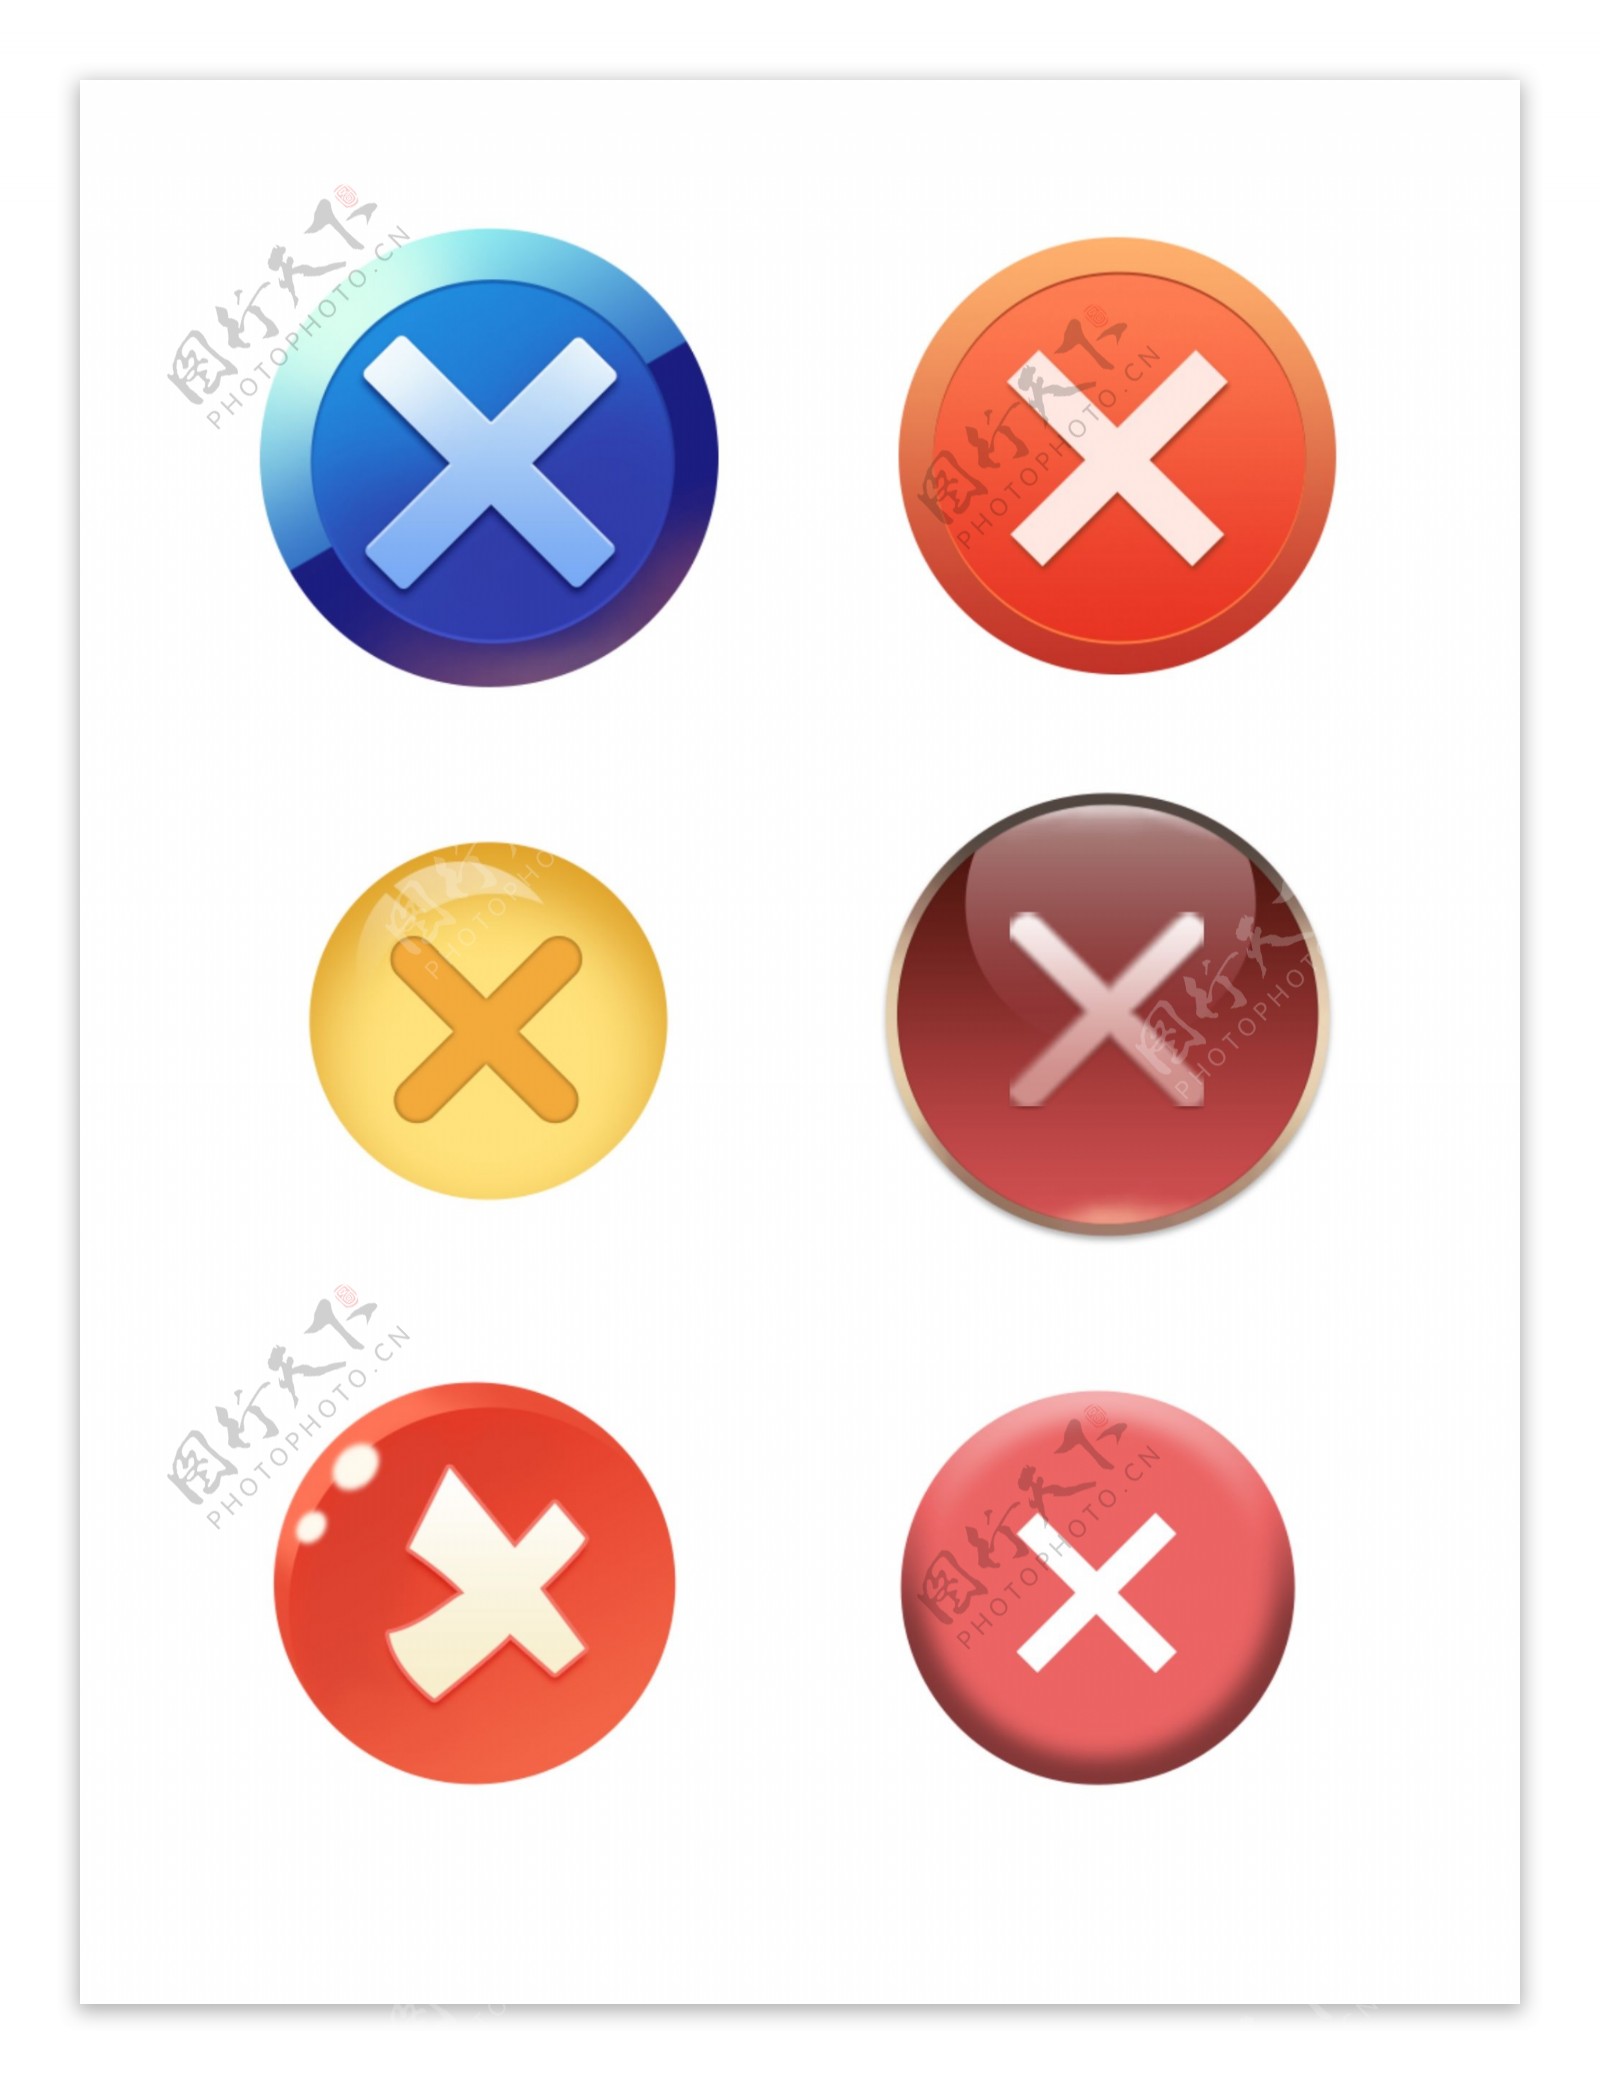 清除按钮icon